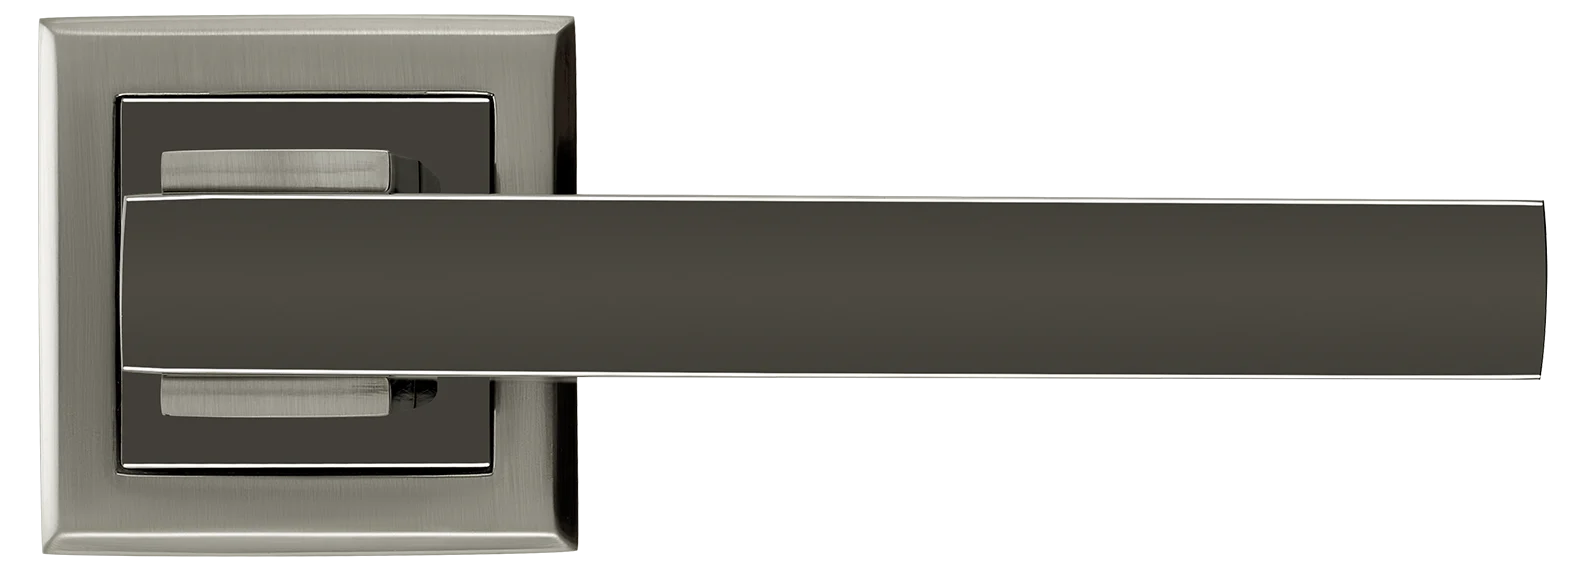 PIQUADRO, ручка дверная MH-37 SN/BN-S, на квадратной накладке, цвет - бел. никель/черн. никель фото купить в Липецке